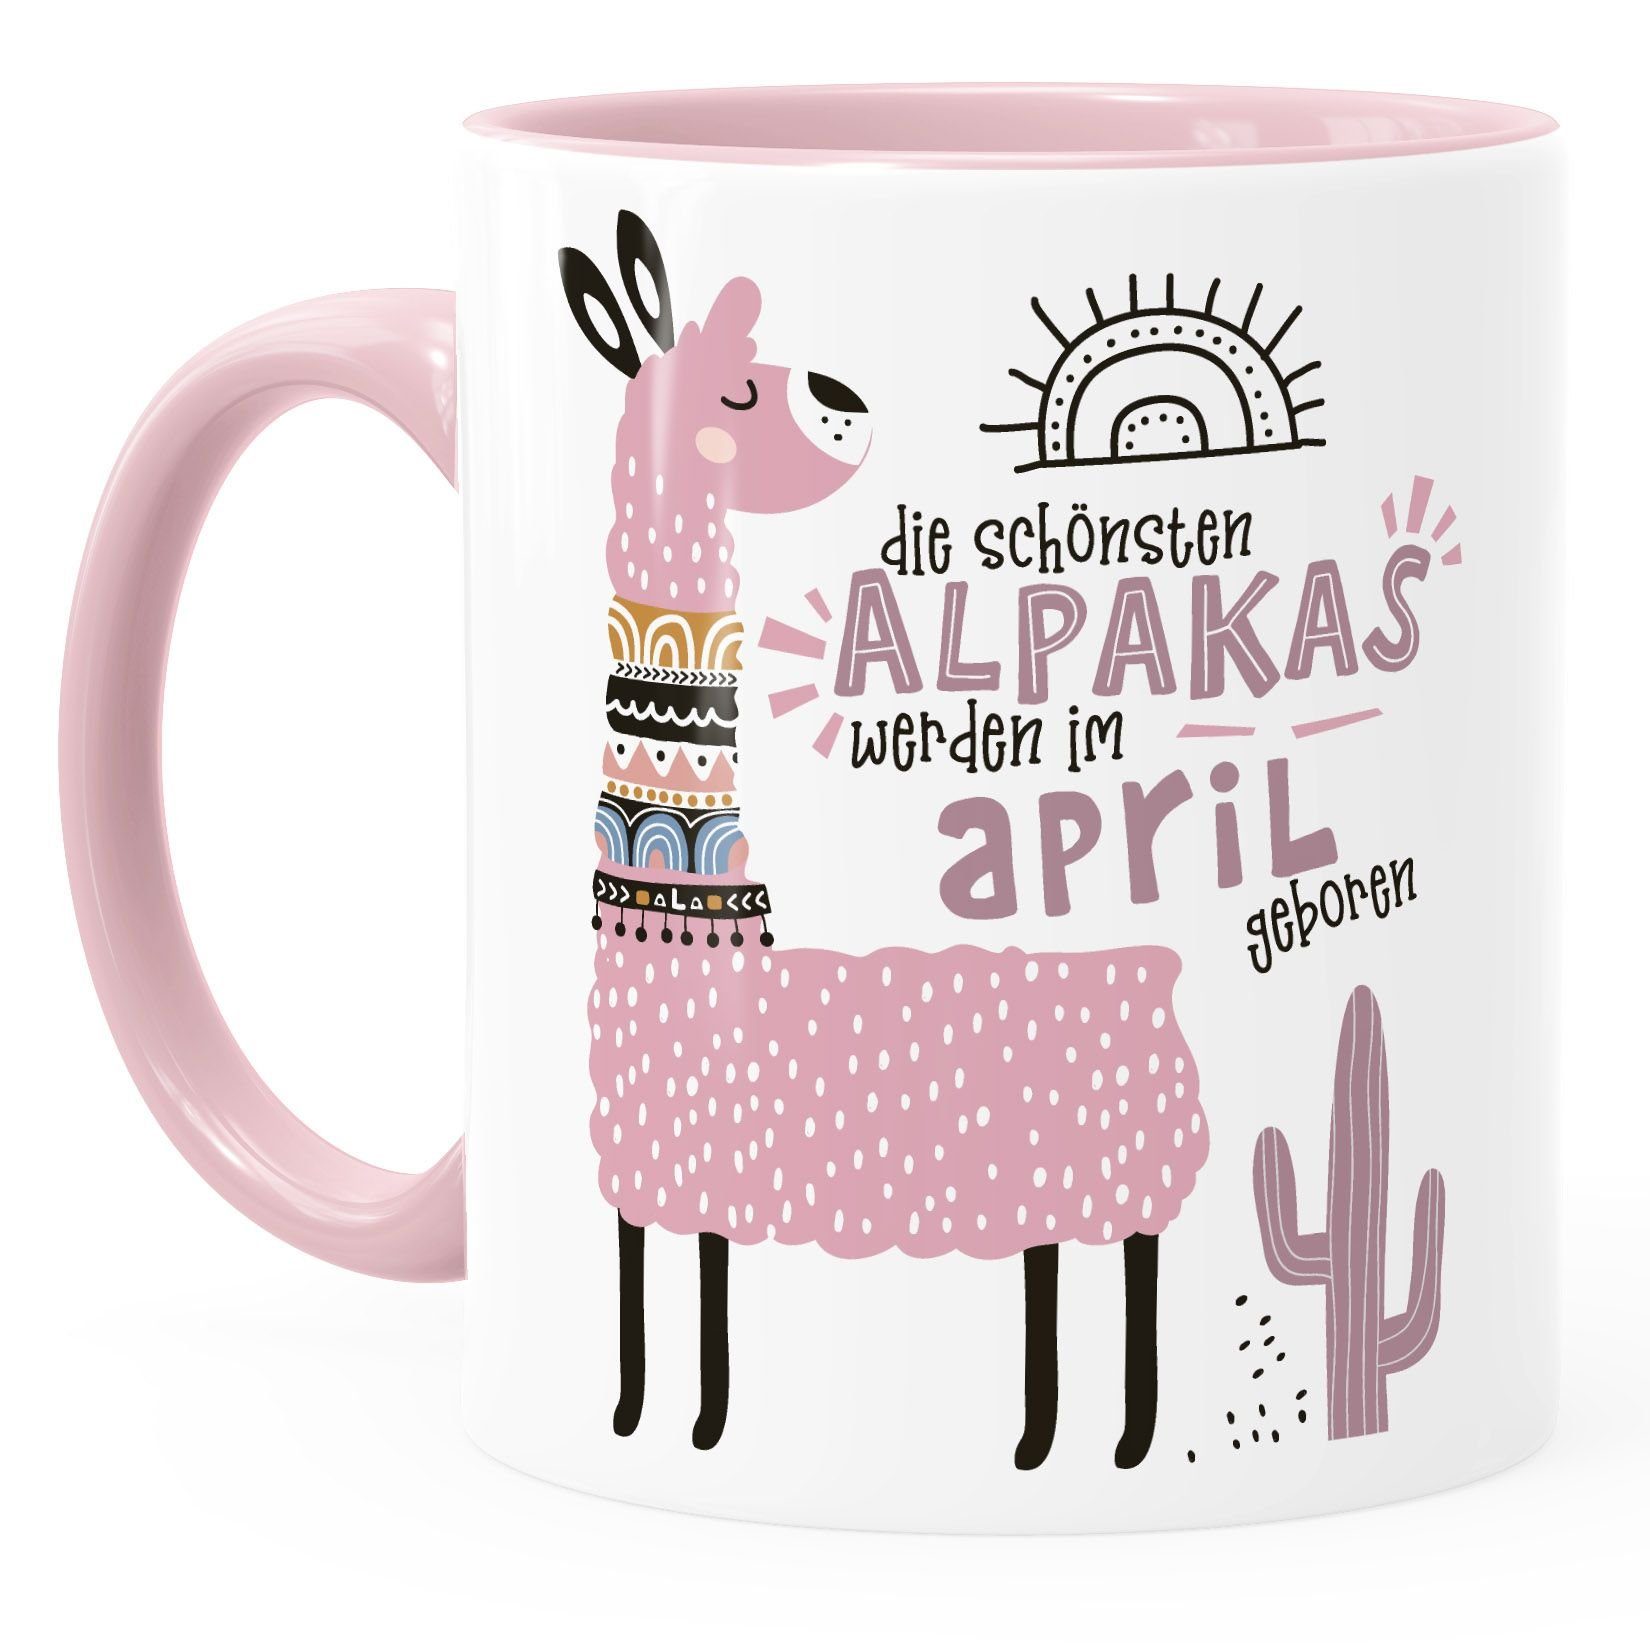 Alpakas rosa Rosa Geburtsmonat Schönsten anpassbares SpecialMe Lama SpecialMe®, im April Die Kaffee-Tasse Motiv Tasse Januar-Dezember Keramik werden Geburtags-Geschenke individuelle geboren